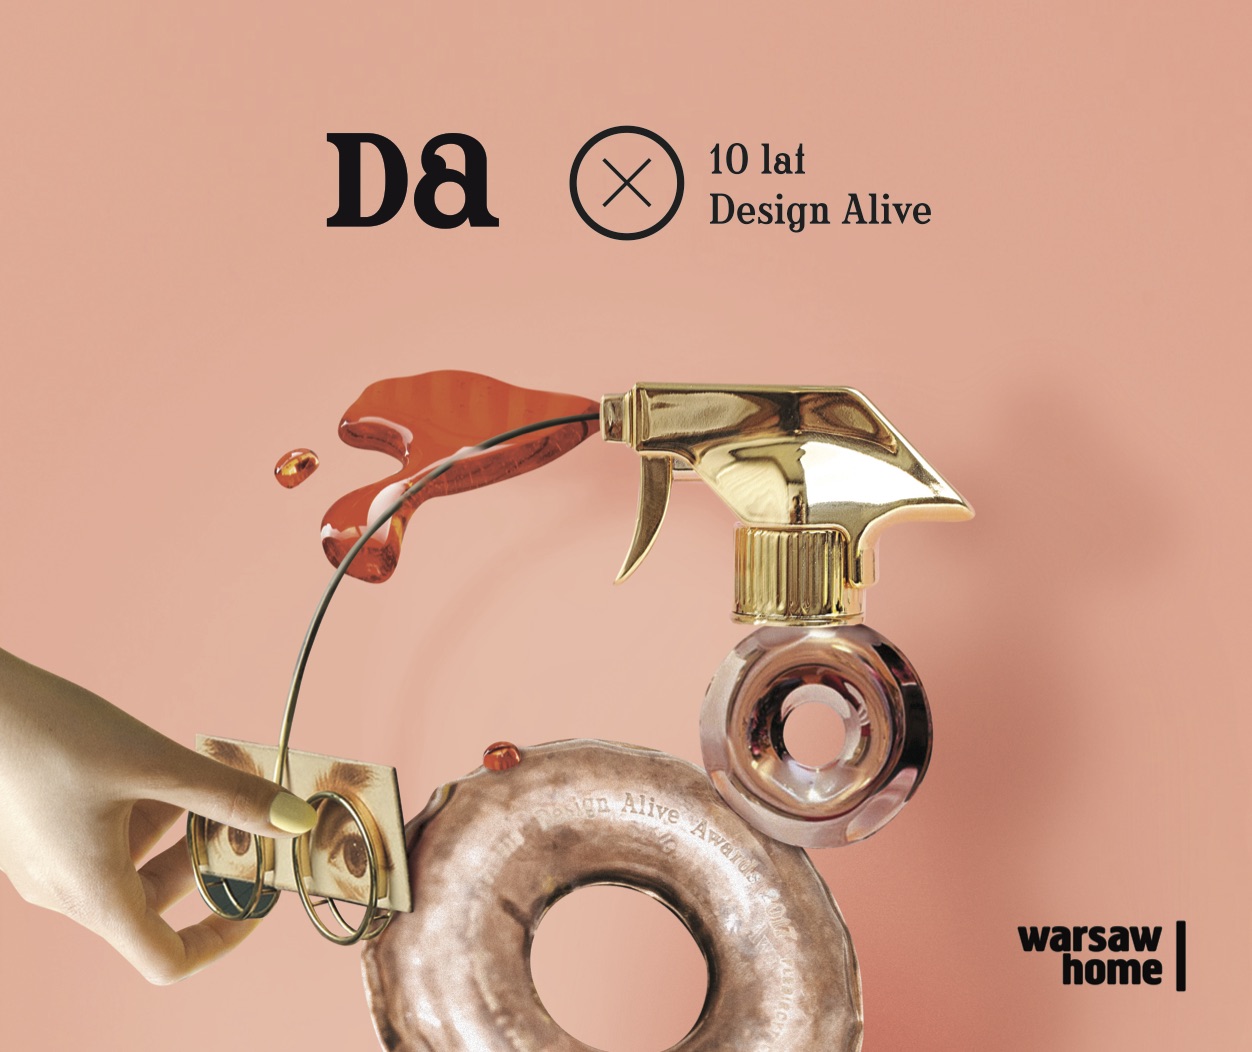 10 lat Design Alive. Spotkajmy się na Warsaw Home